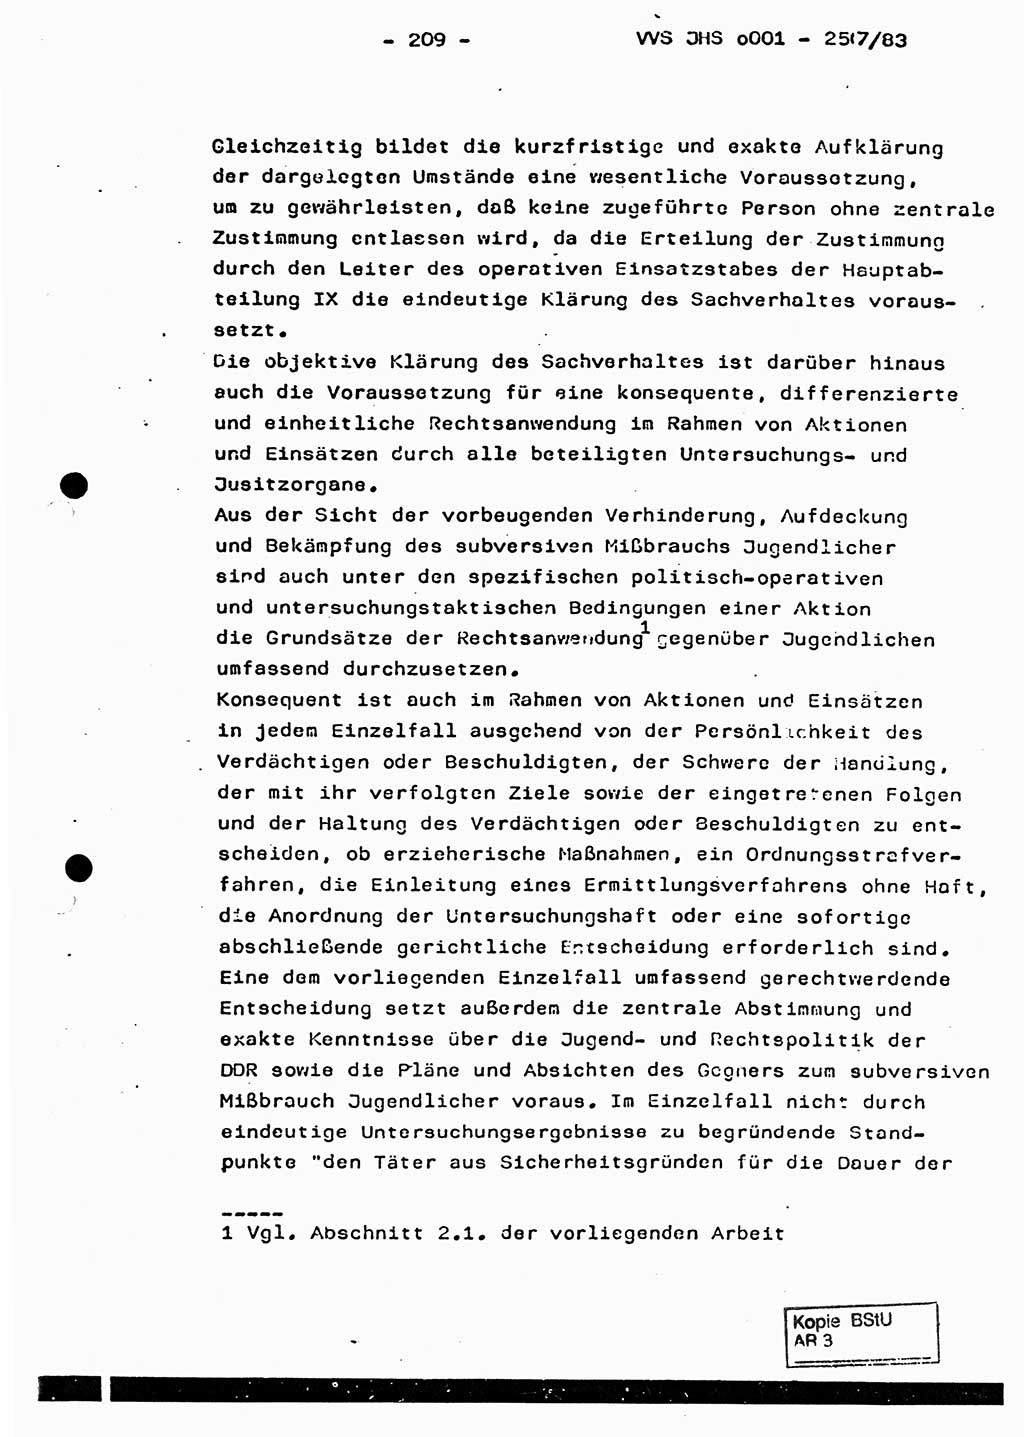 Dissertation, Oberst Helmut Lubas (BV Mdg.), Oberstleutnant Manfred Eschberger (HA IX), Oberleutnant Hans-Jürgen Ludwig (JHS), Ministerium für Staatssicherheit (MfS) [Deutsche Demokratische Republik (DDR)], Juristische Hochschule (JHS), Vertrauliche Verschlußsache (VVS) o001-257/83, Potsdam 1983, Seite 209 (Diss. MfS DDR JHS VVS o001-257/83 1983, S. 209)